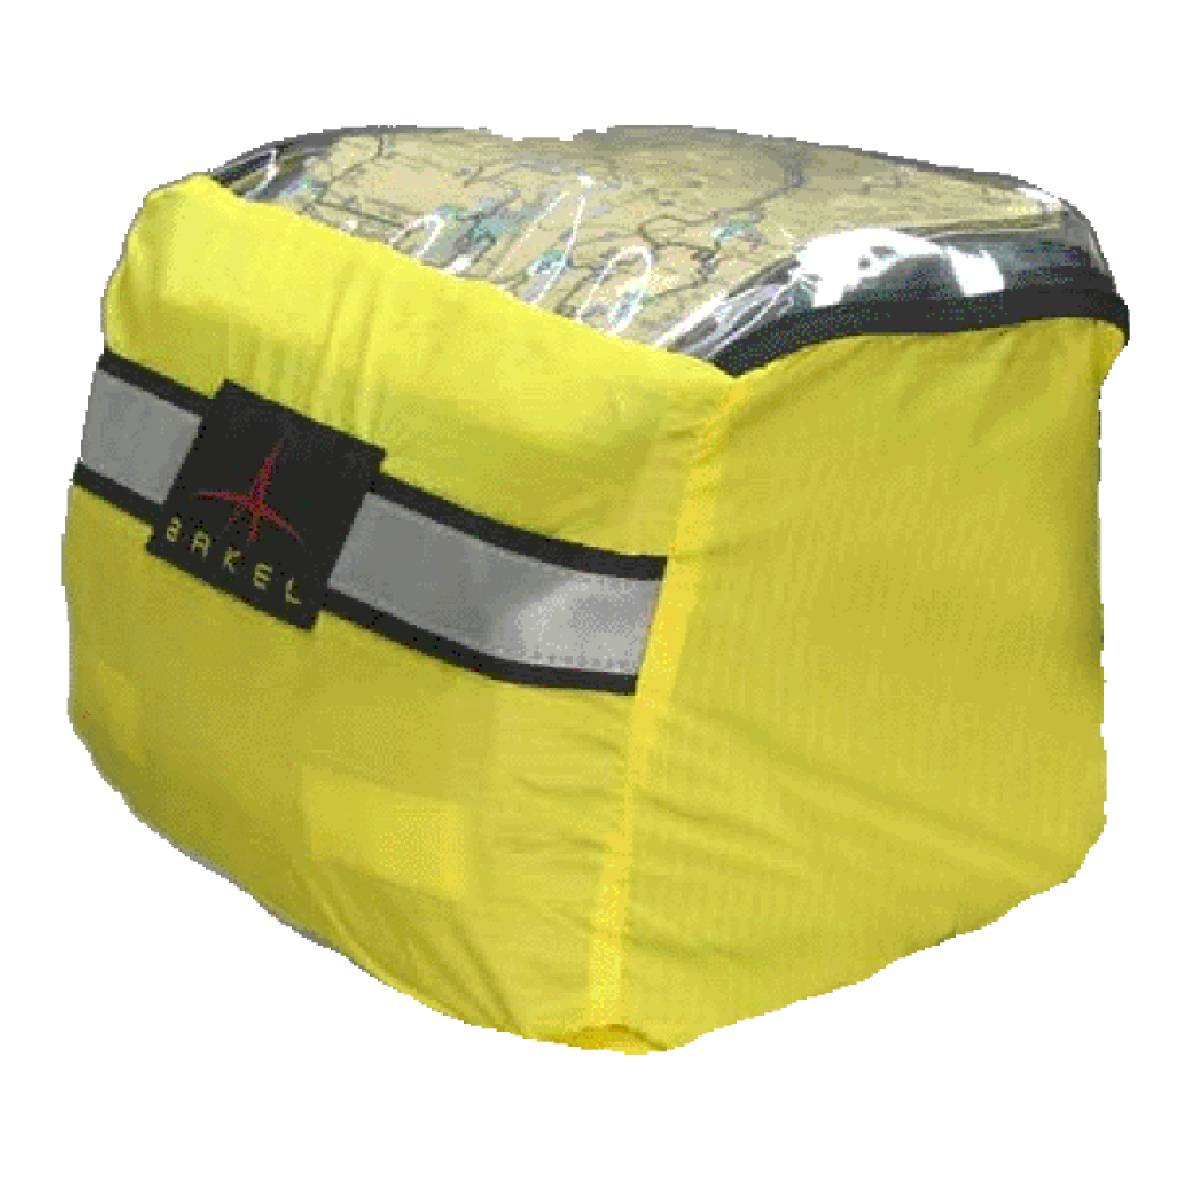 Arkel Waterproof Bag Cover - Large for Handlebar